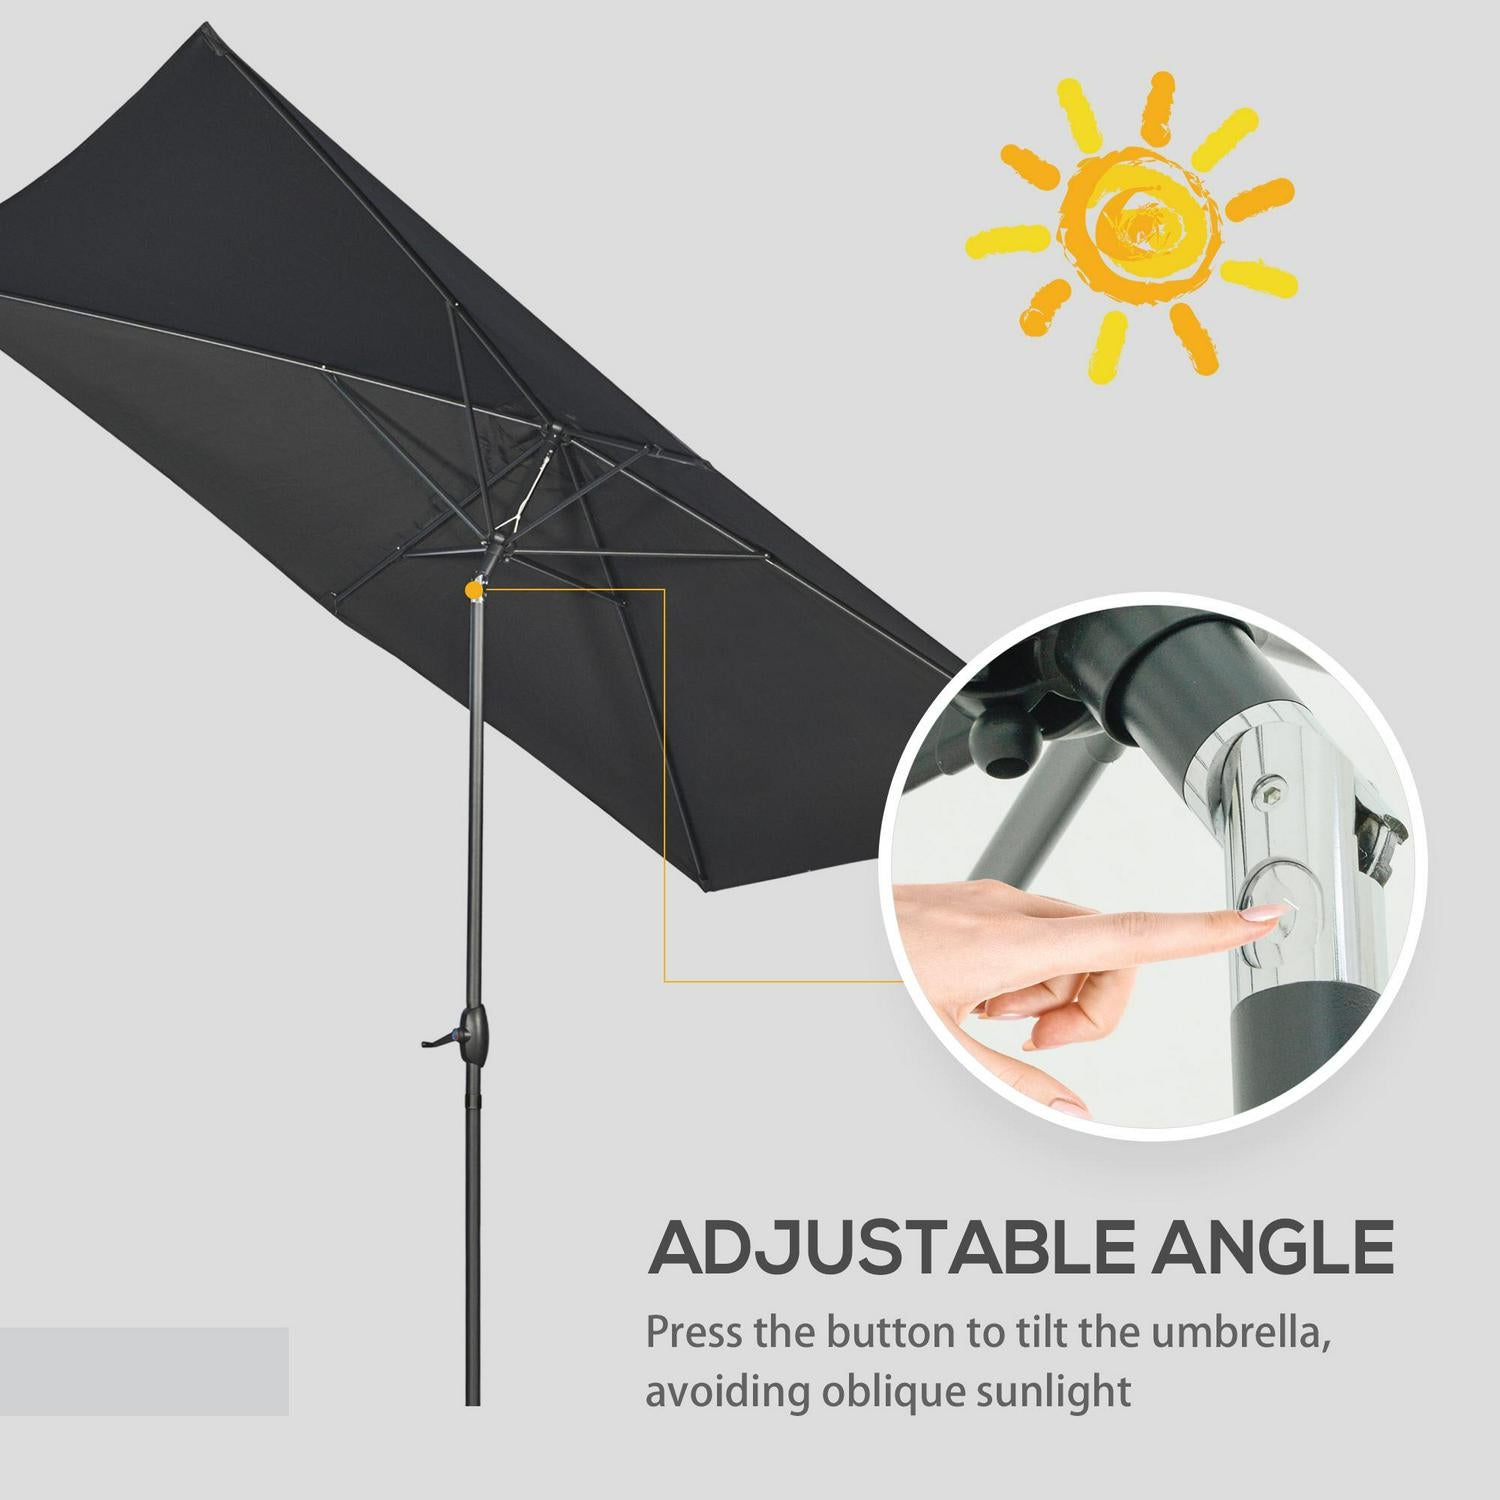 Garden Parasols Umbrellas Rectangular Patio Market Outdoor Shade- Black